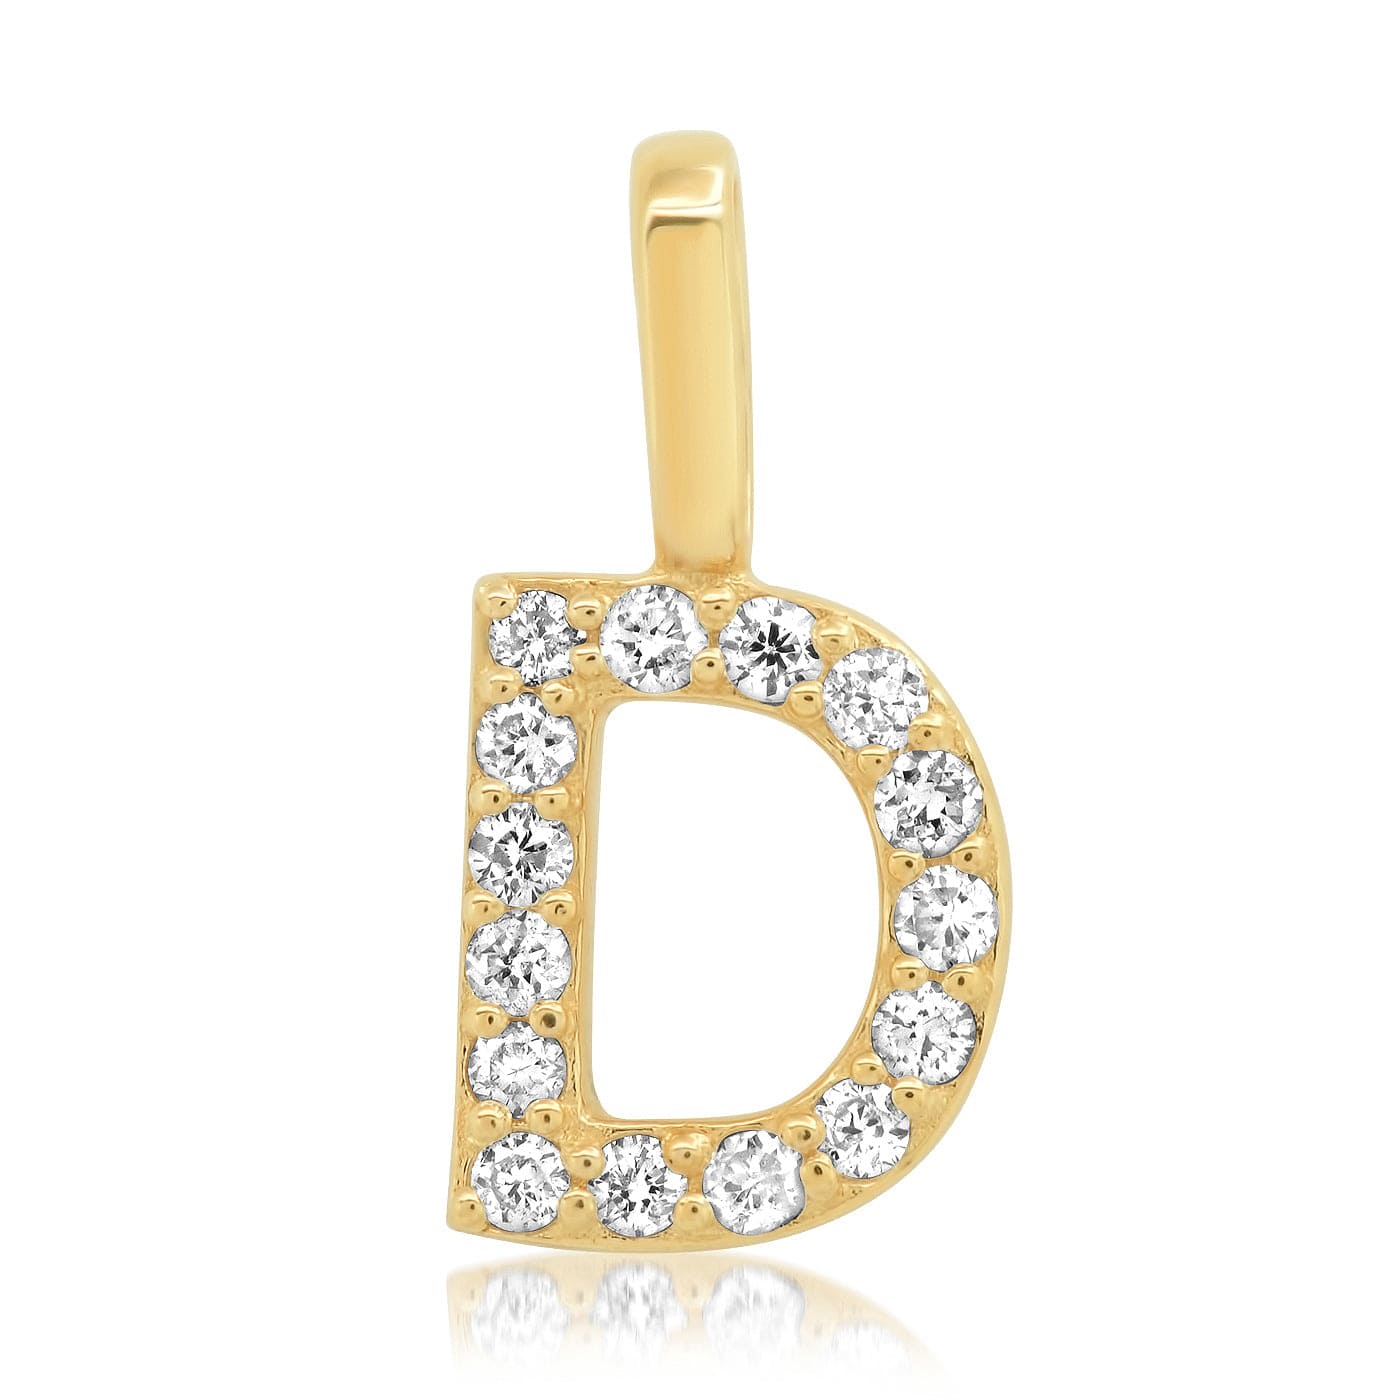 TAI JEWELRY Necklace D 14K Diamond Pavé Monogram Pendant